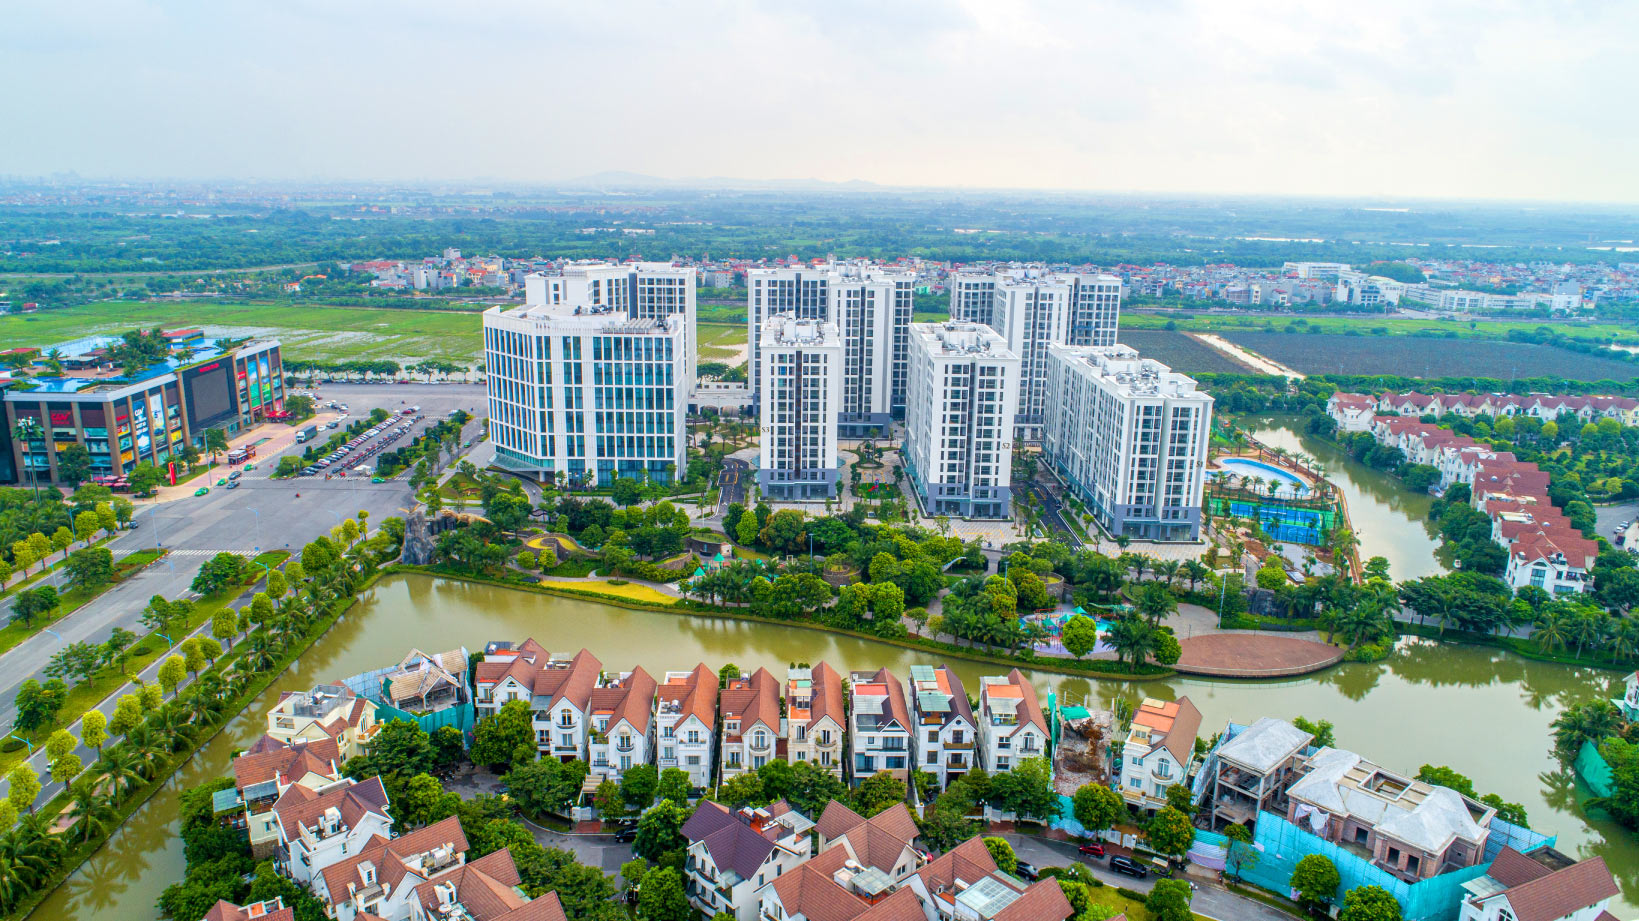 Bất động sản phía Đông Hà Nội hút giới nhà giàu như thế nào trong 10 năm qua? - Ảnh 2.